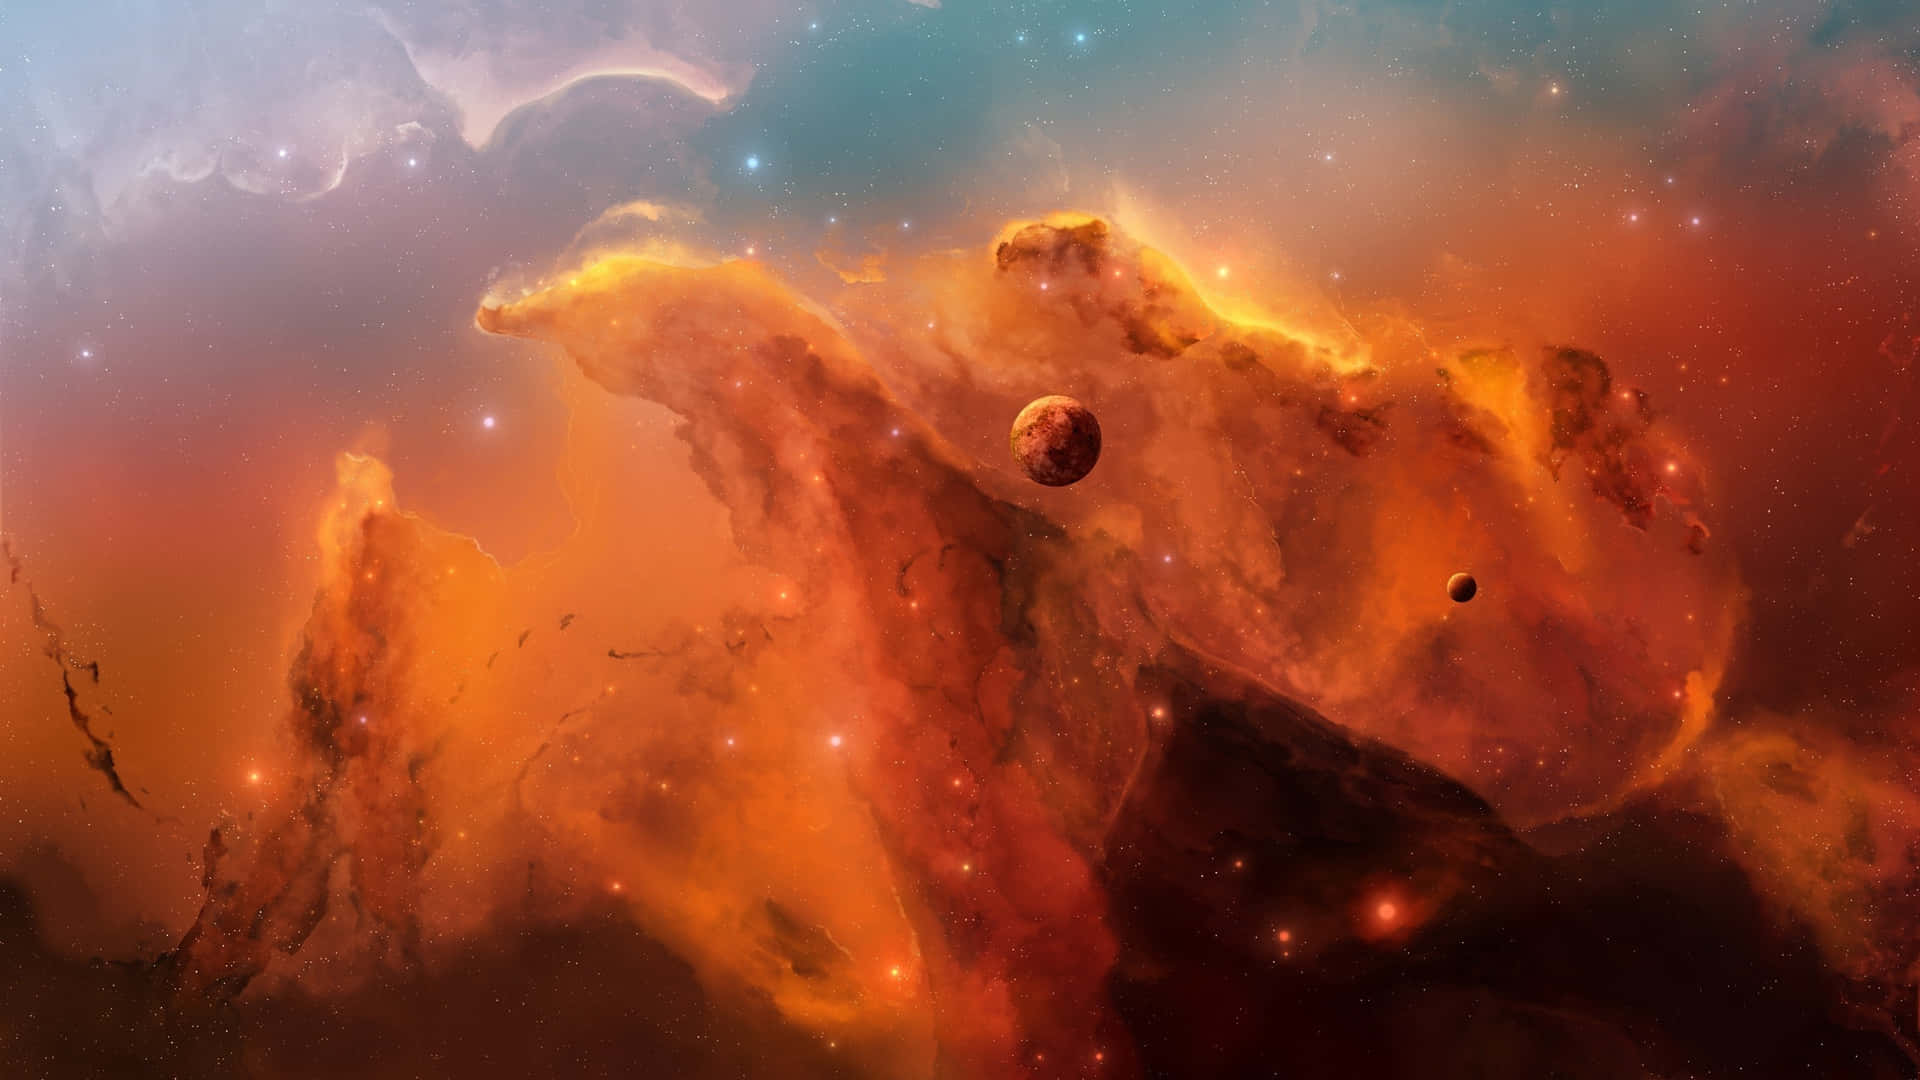 1440p Space Carina Nebula Great Clouds Wallpaper